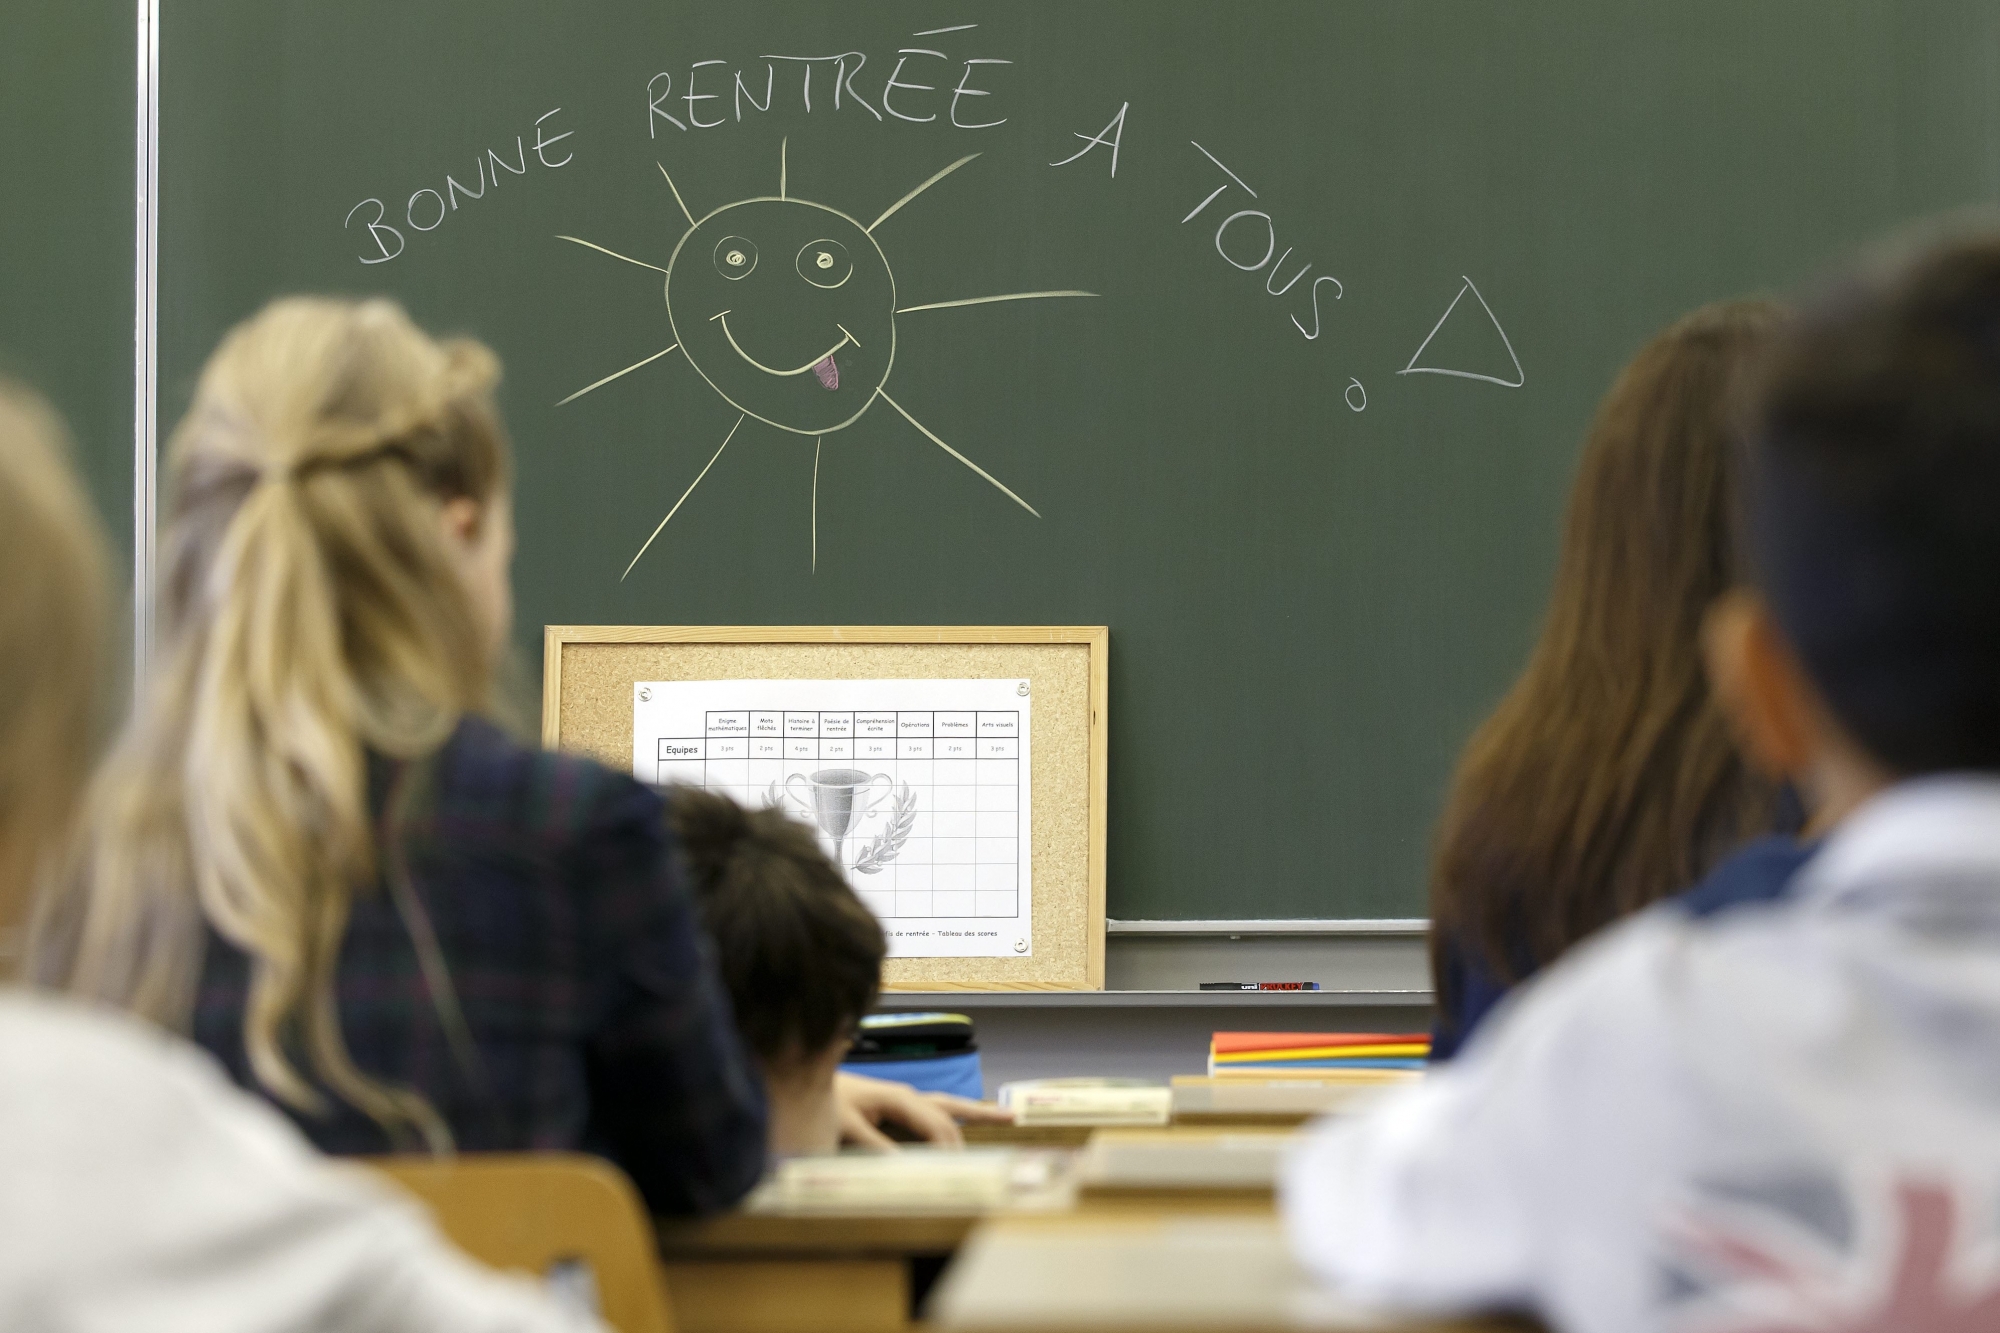 A l'heure de la rentrée scolaire, le pédagogue Claude-Alain Kleiner livre une réflexion sur le plaisir et l'intérêt d'aller à l'école.